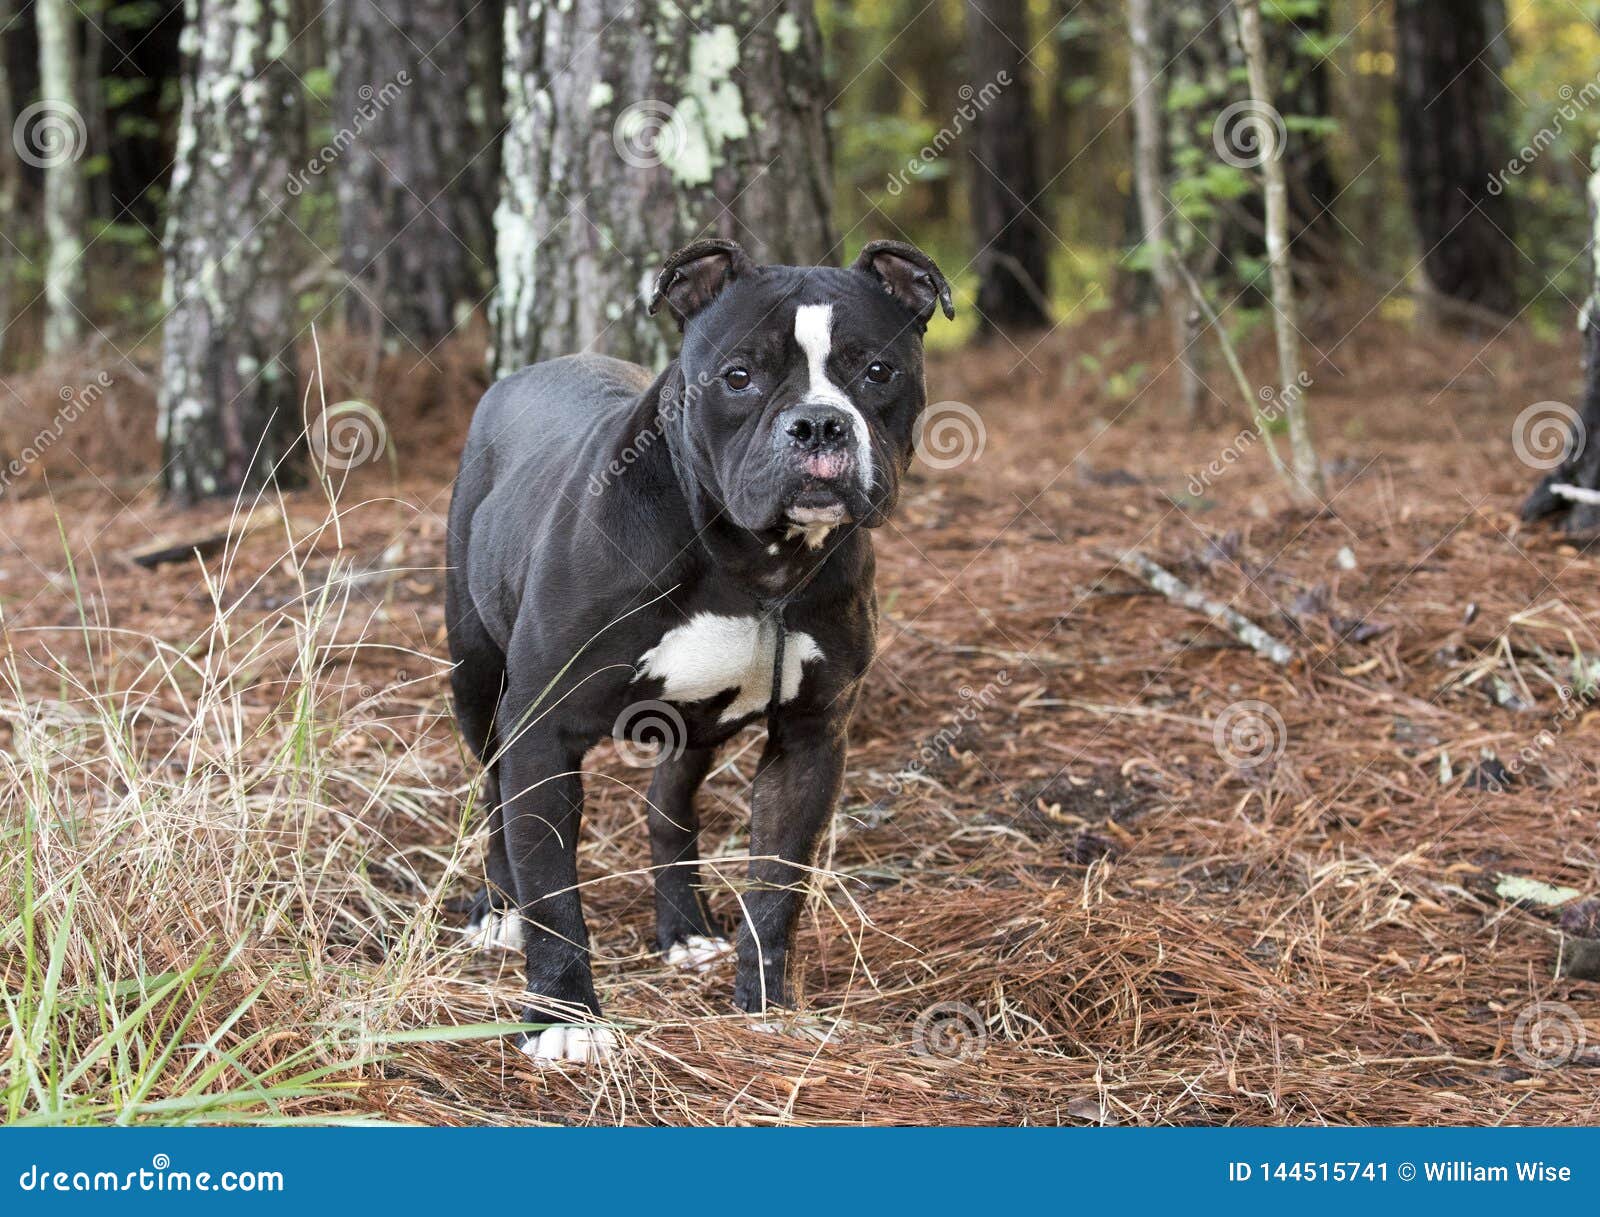 Black And White Bulldog Terrier Dog Outside On Leash Stock Image Image Of Adoption Senior 144515741